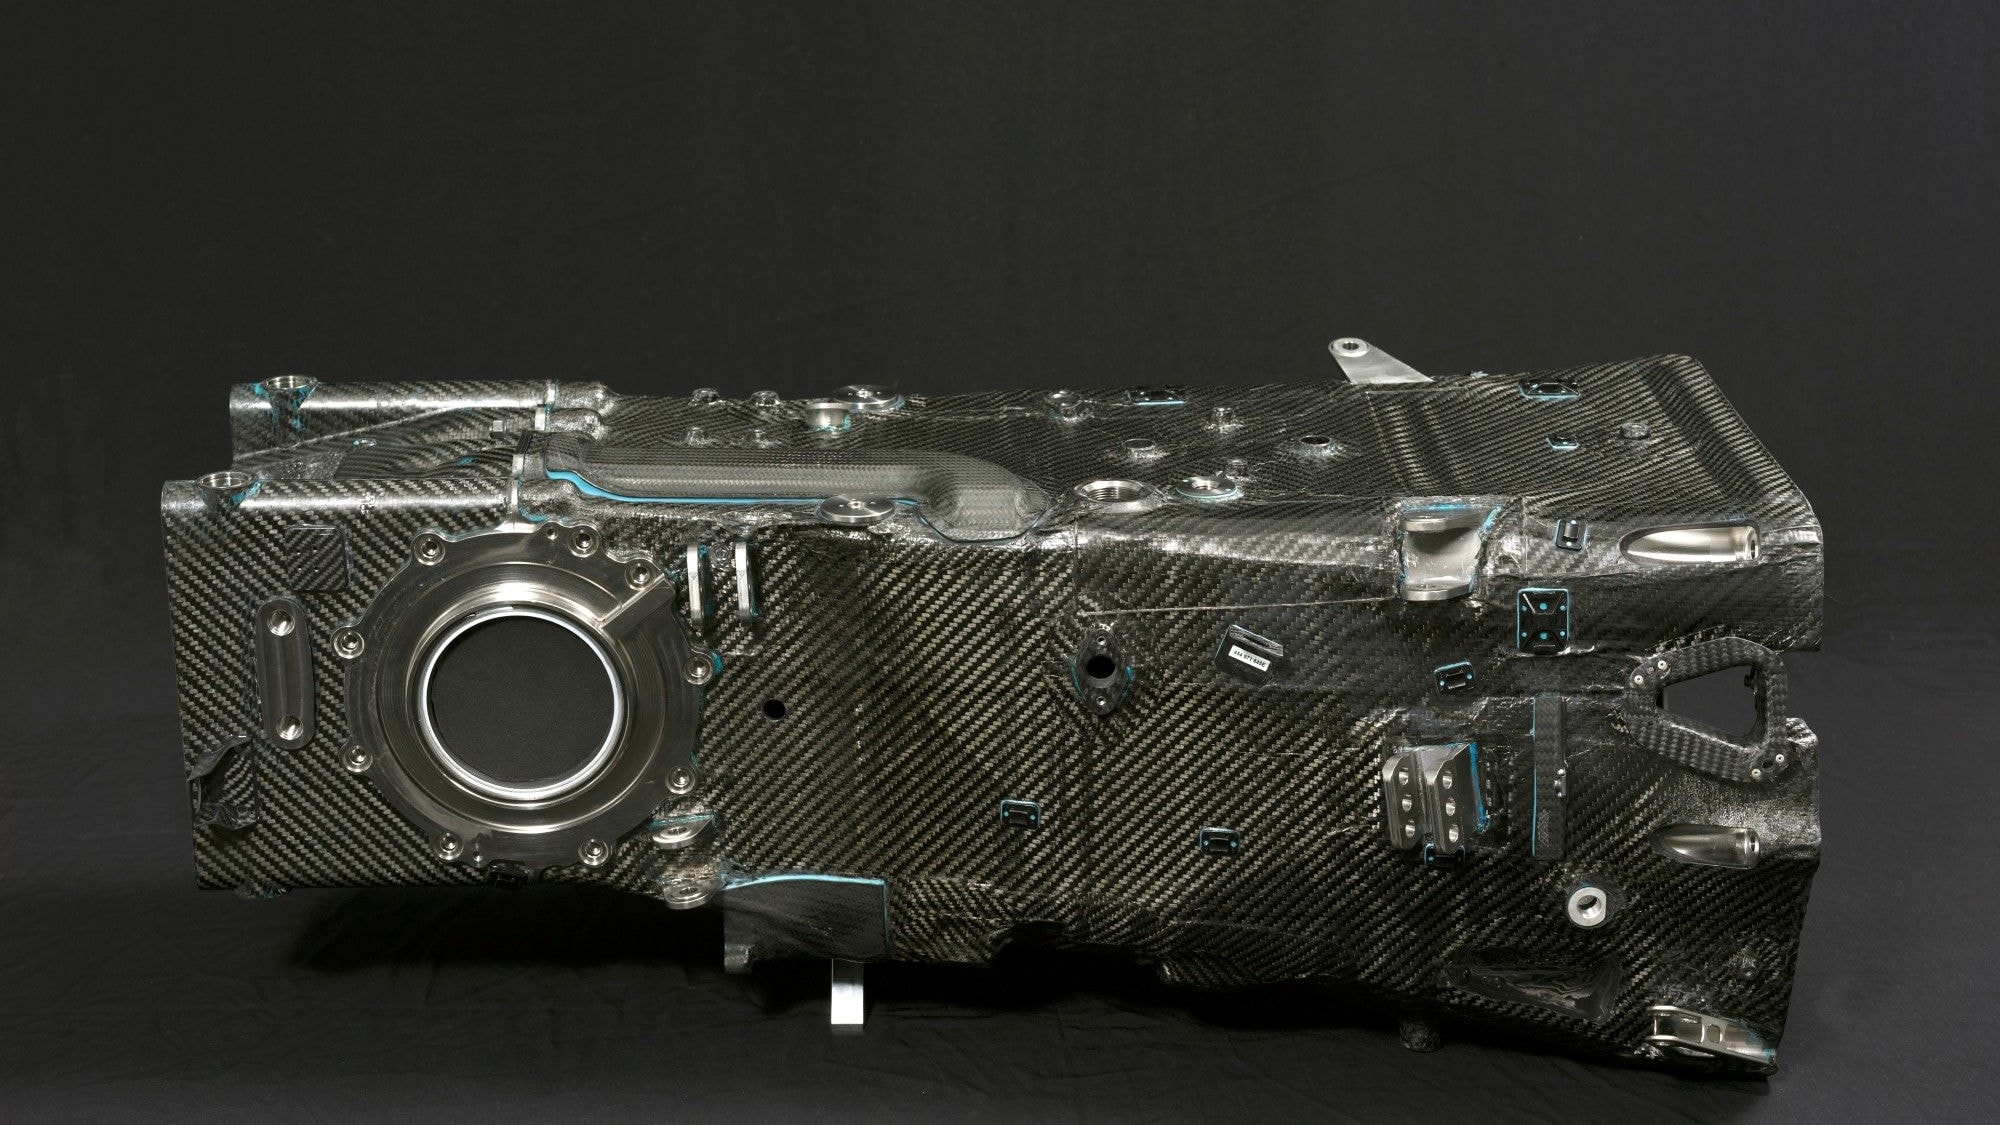 Audi Le Mans prototypes, lightness through carbon fiber